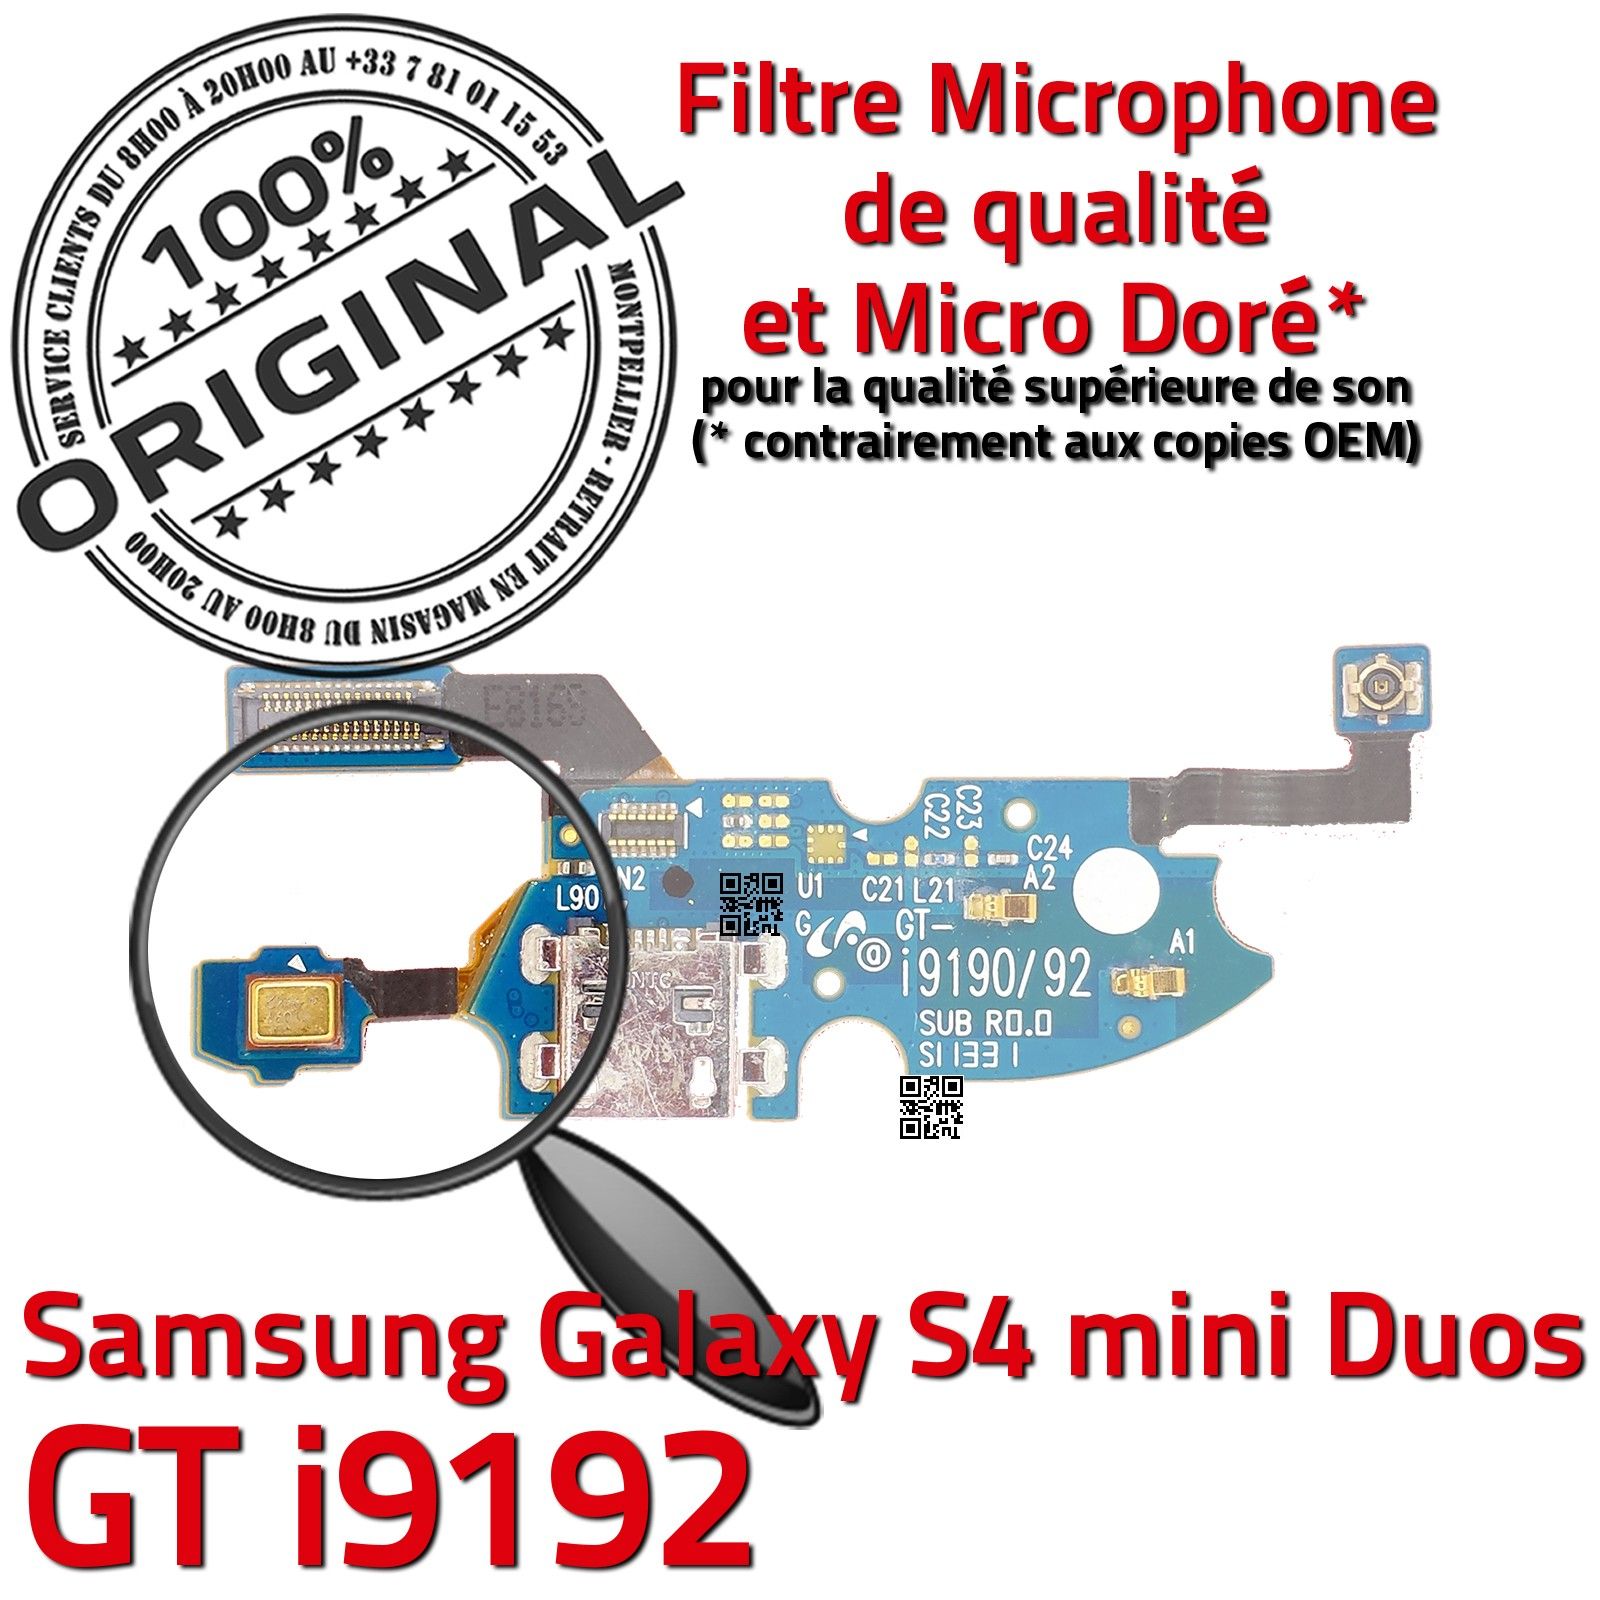 ORIGINAL Samsung Galaxy S 4 Duos GT i9192 Connecteur Charge Prise Chargeur MicroUSB Nappe OFFICIELLE Qualité Microphone RESEAU